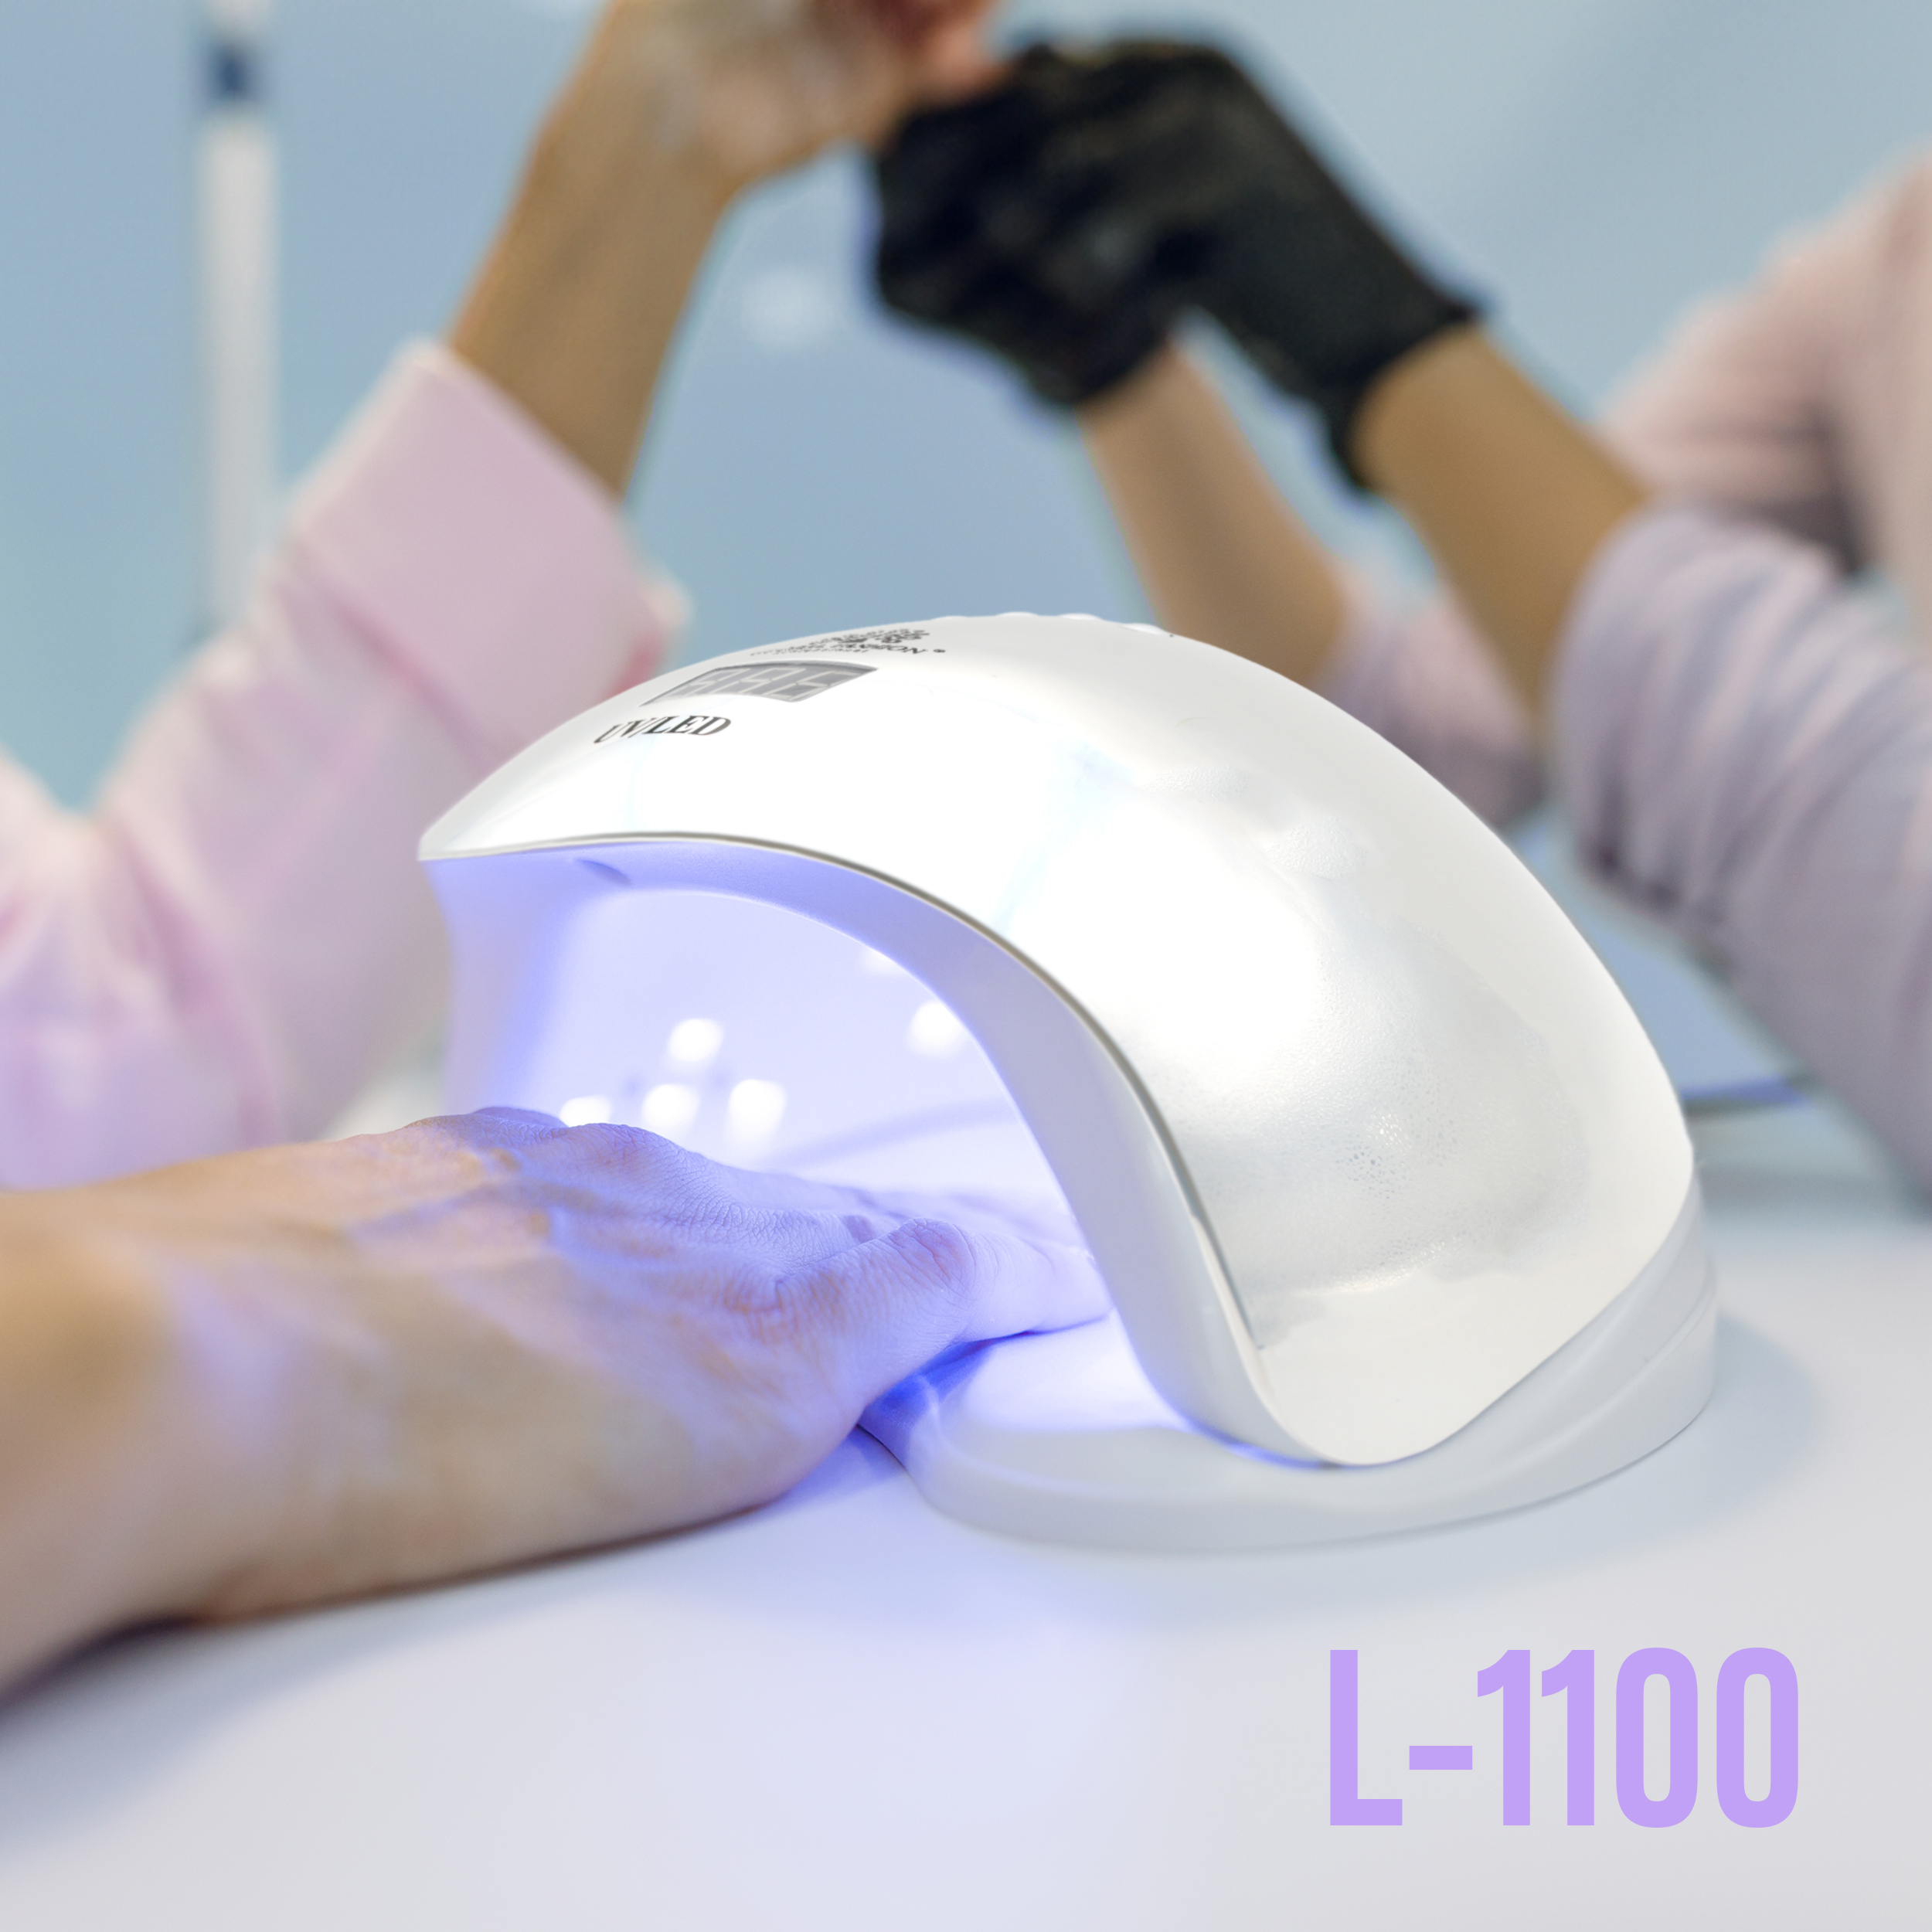 Лампа для маникюра UV LED L-1100 72Вт - высочайшее качество